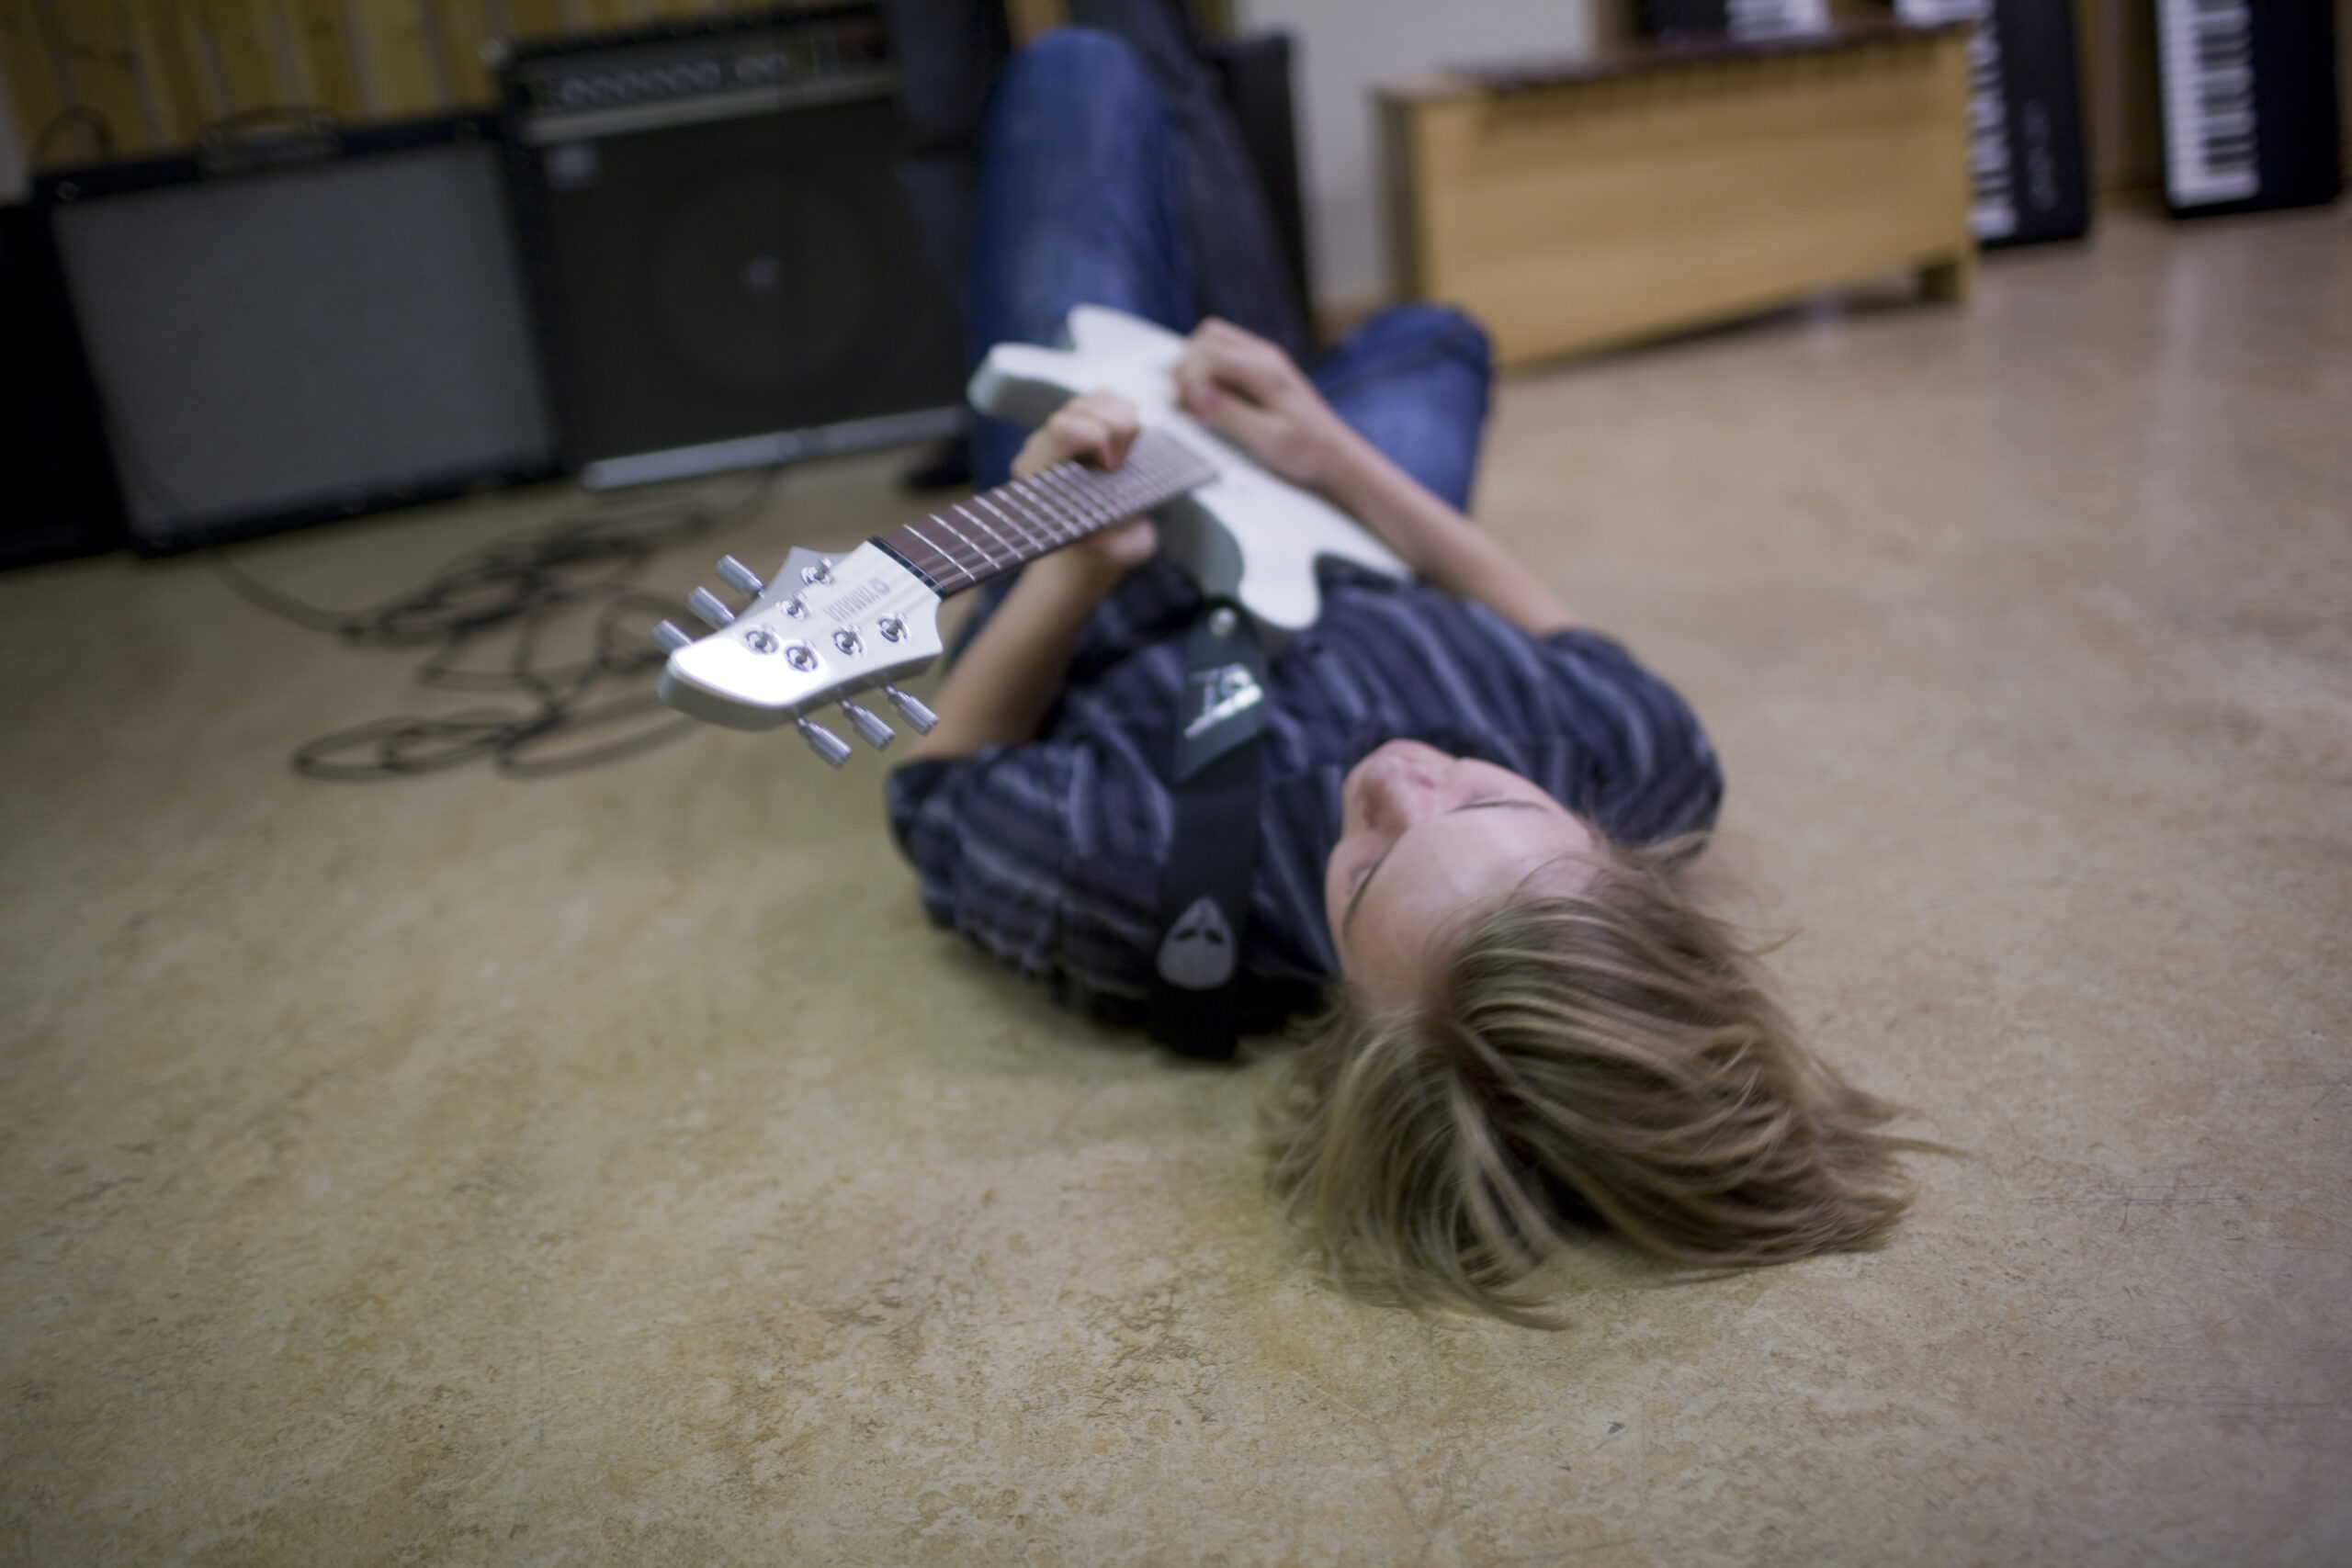 Ung gitarist liggende på gulvet